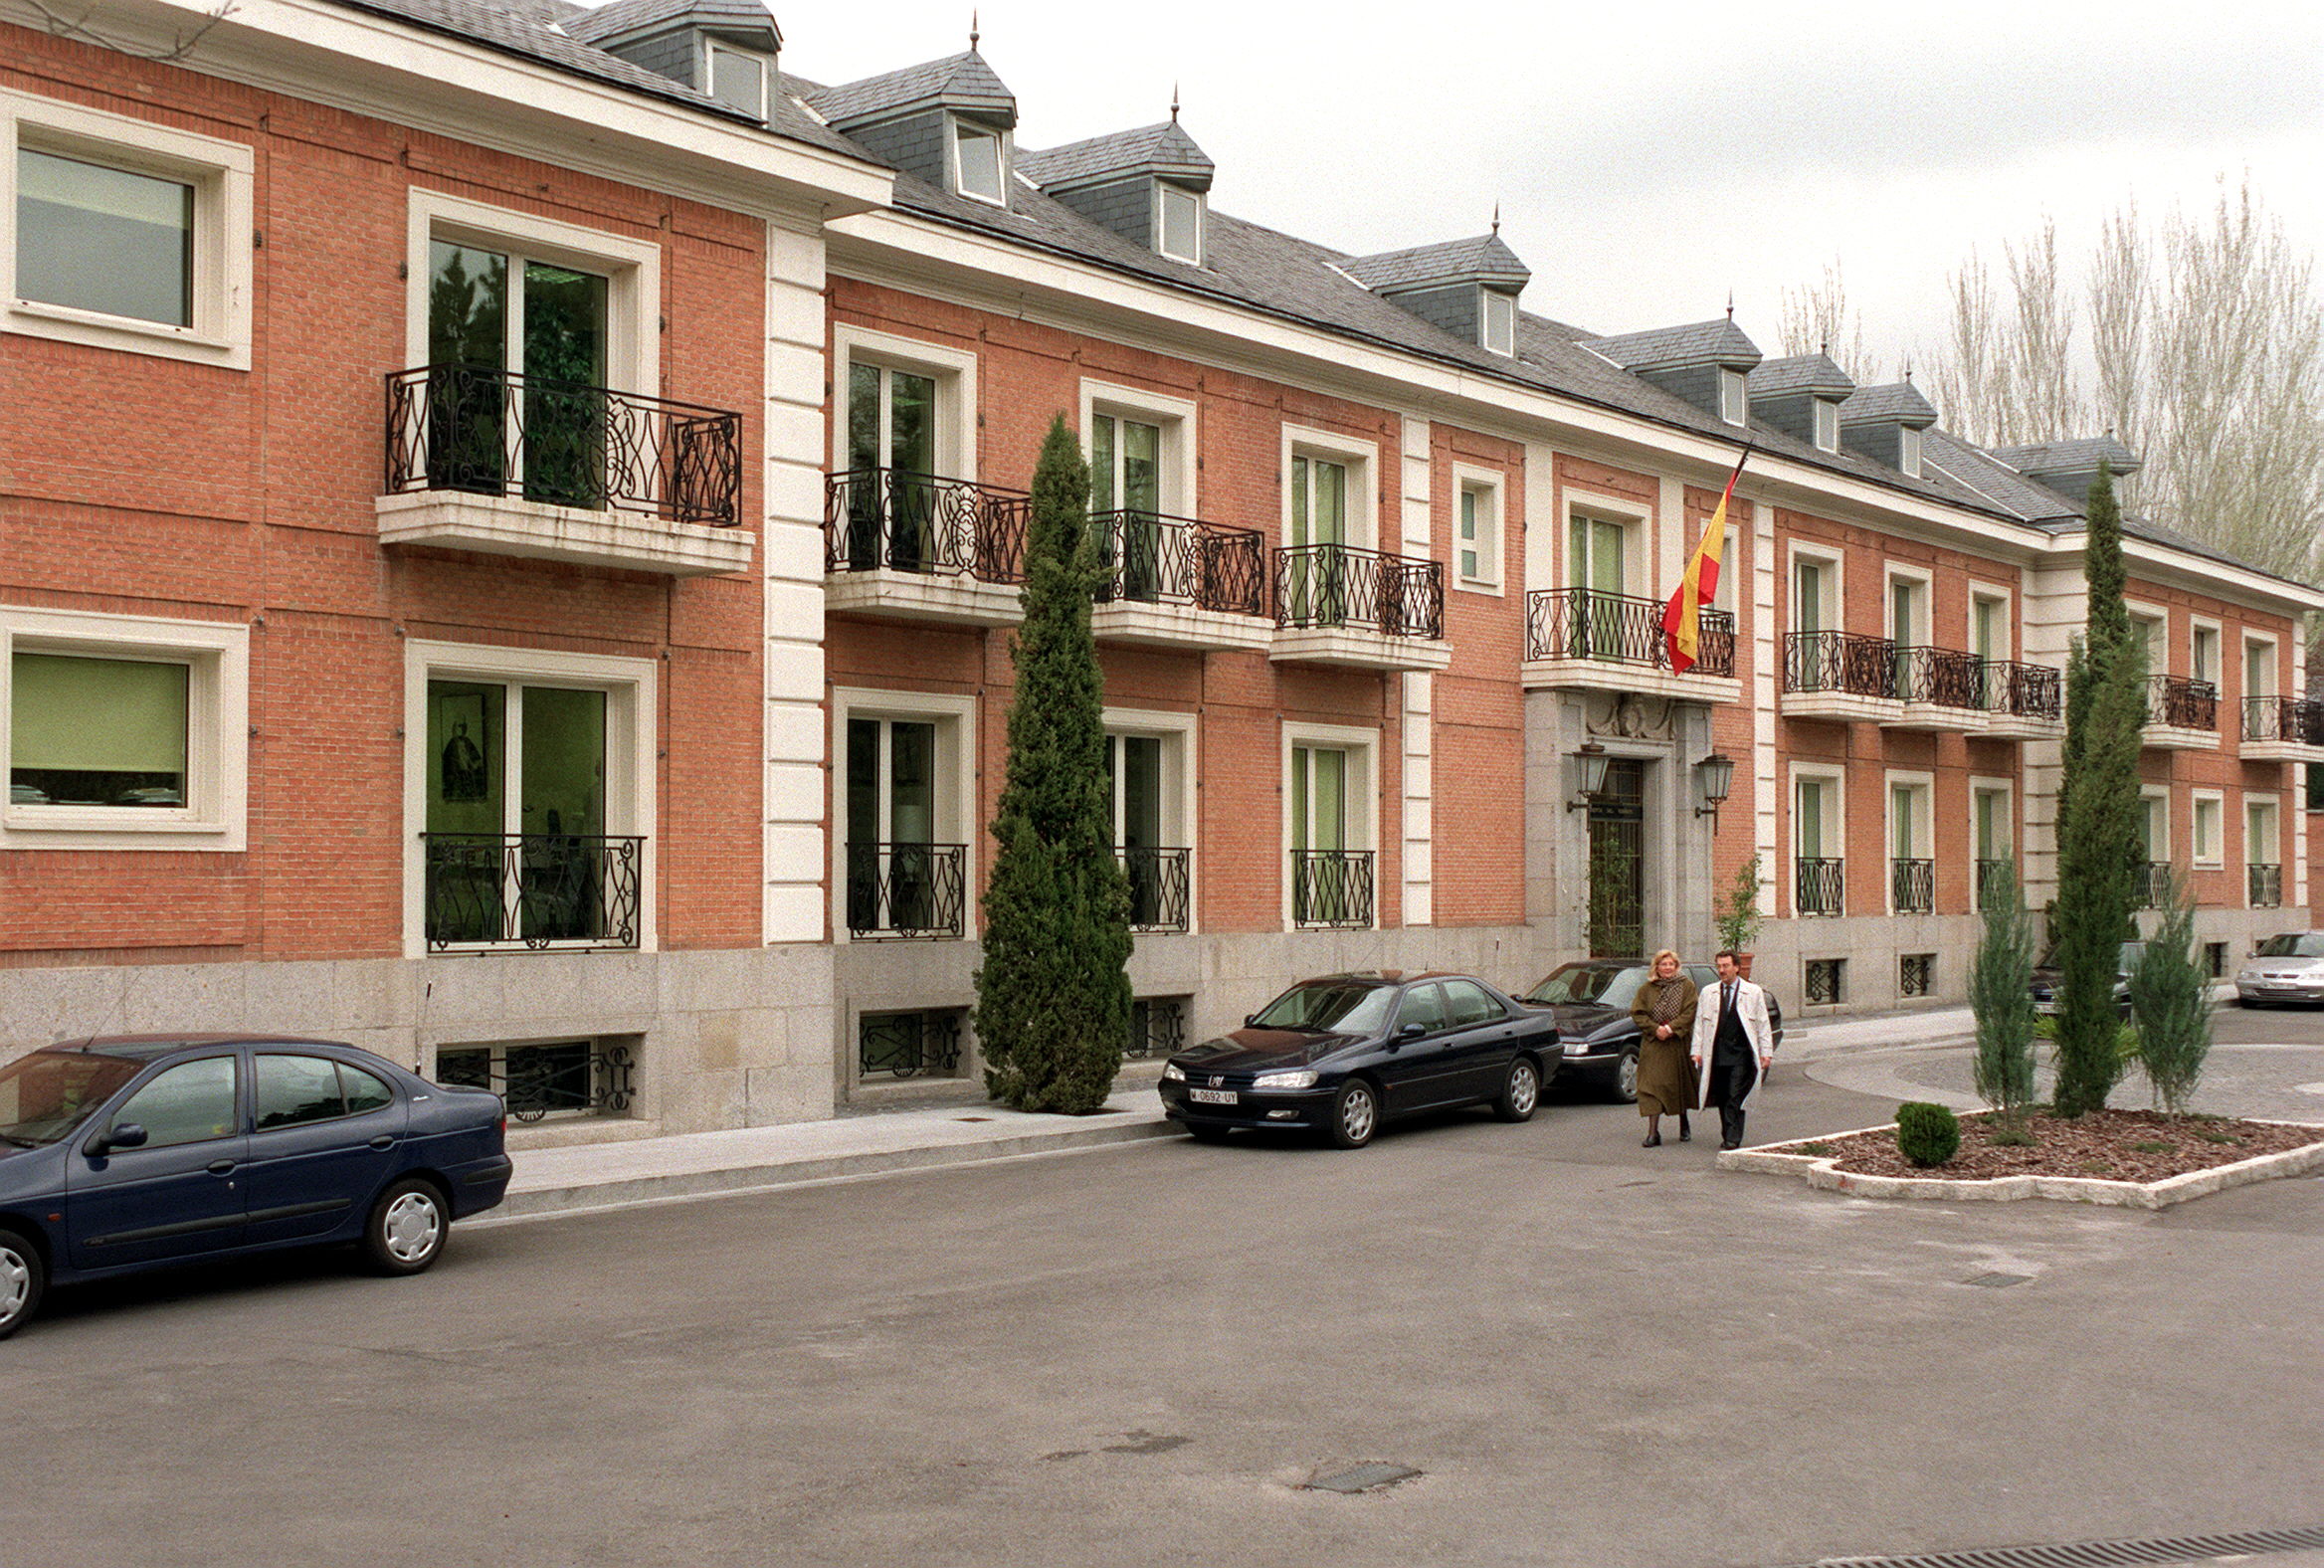 El complejo residencial del presidente del Gobierno de España se destaca como una propiedad de alto valor, sin tener en cuenta su significado histórico y cultural. Foto: Envato